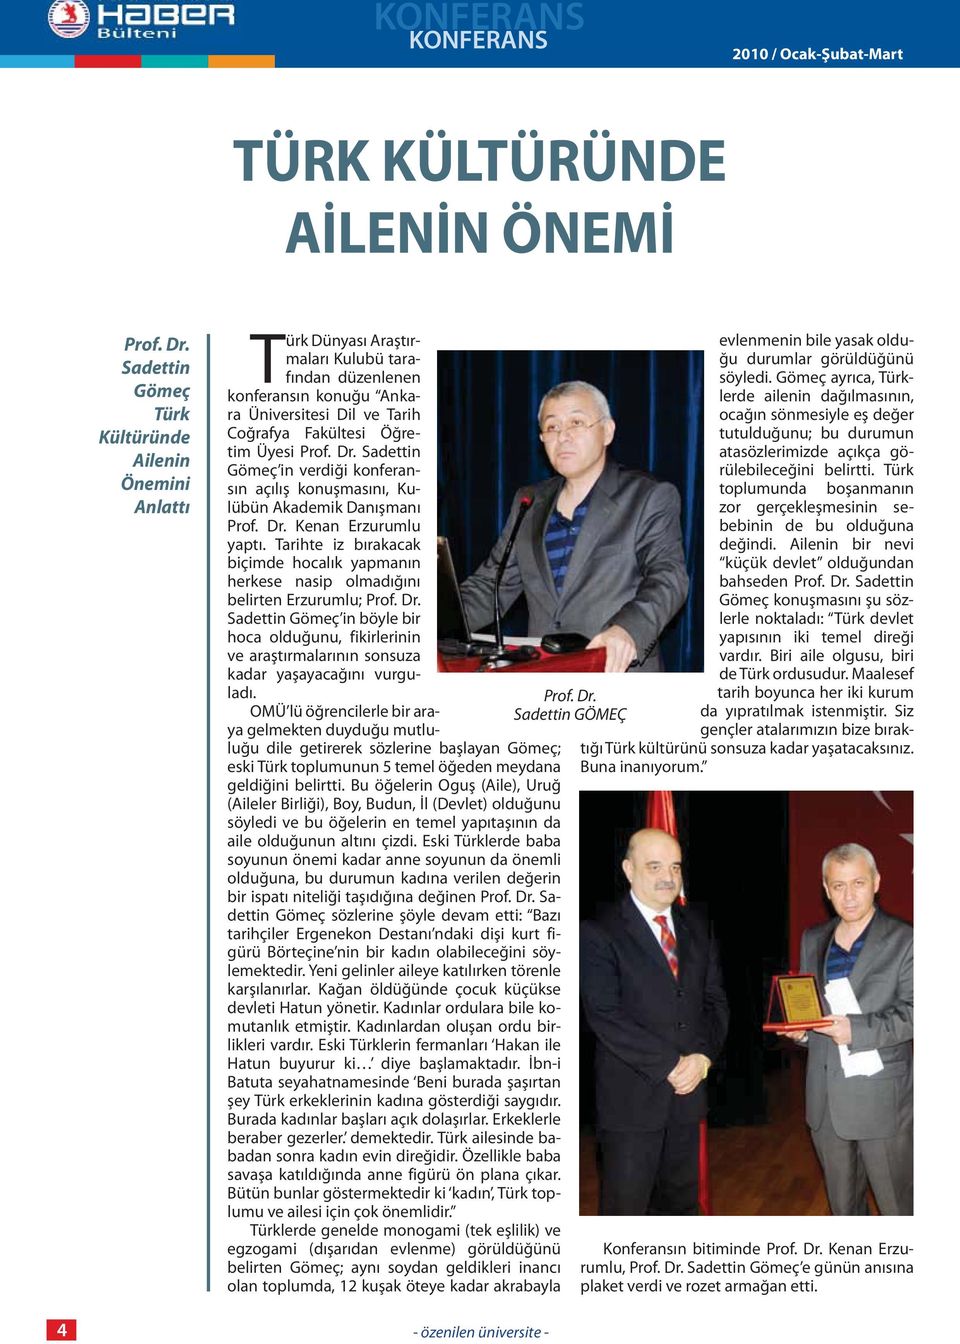 Prof. Dr. Sadettin Gömeç in verdiği konferansın açılış konuşmasını, Kulübün Akademik Danışmanı Prof. Dr. Kenan Erzurumlu yaptı.